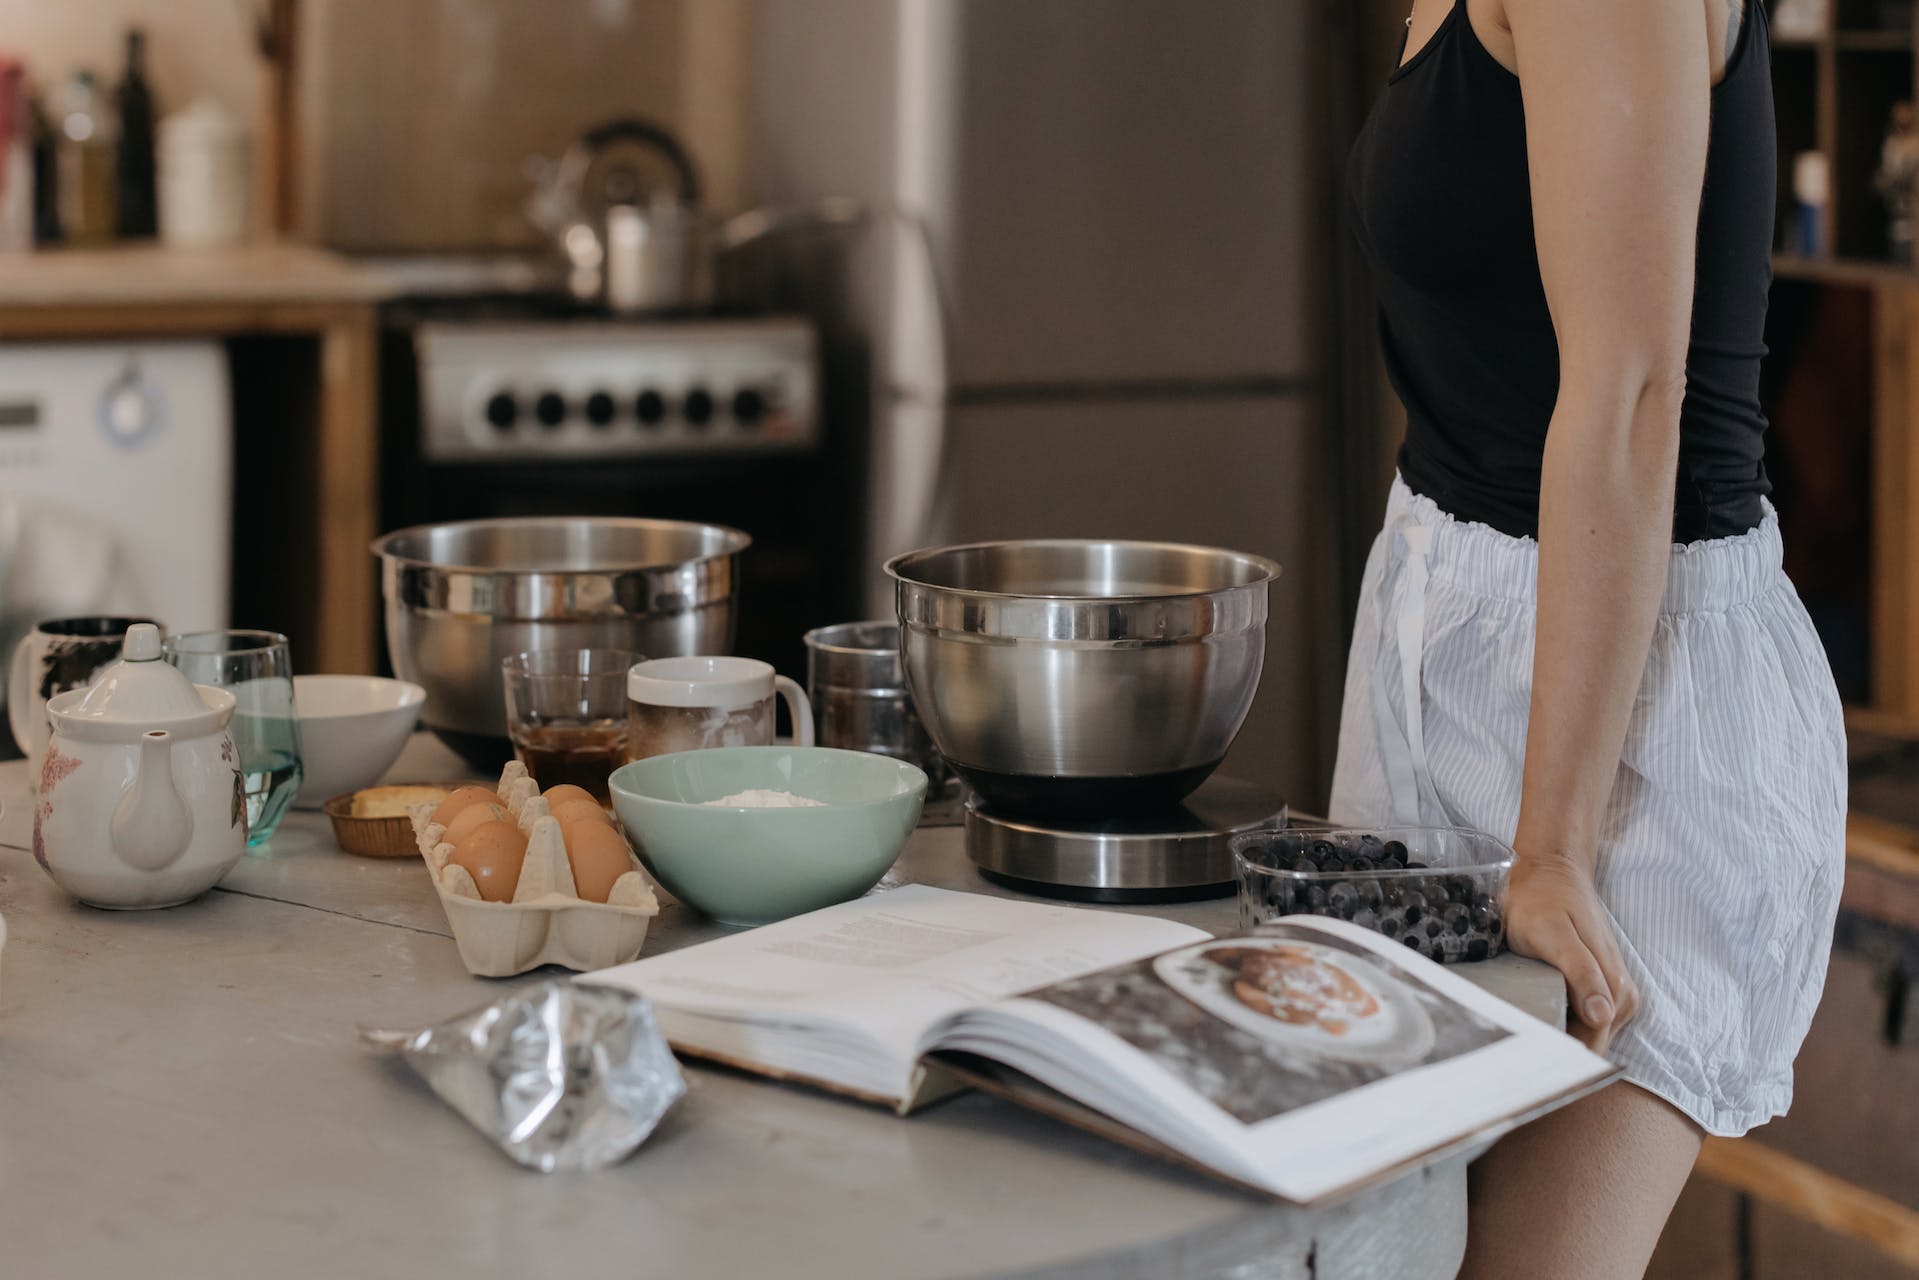 Femme debout dans la cuisine | Source : Pexels